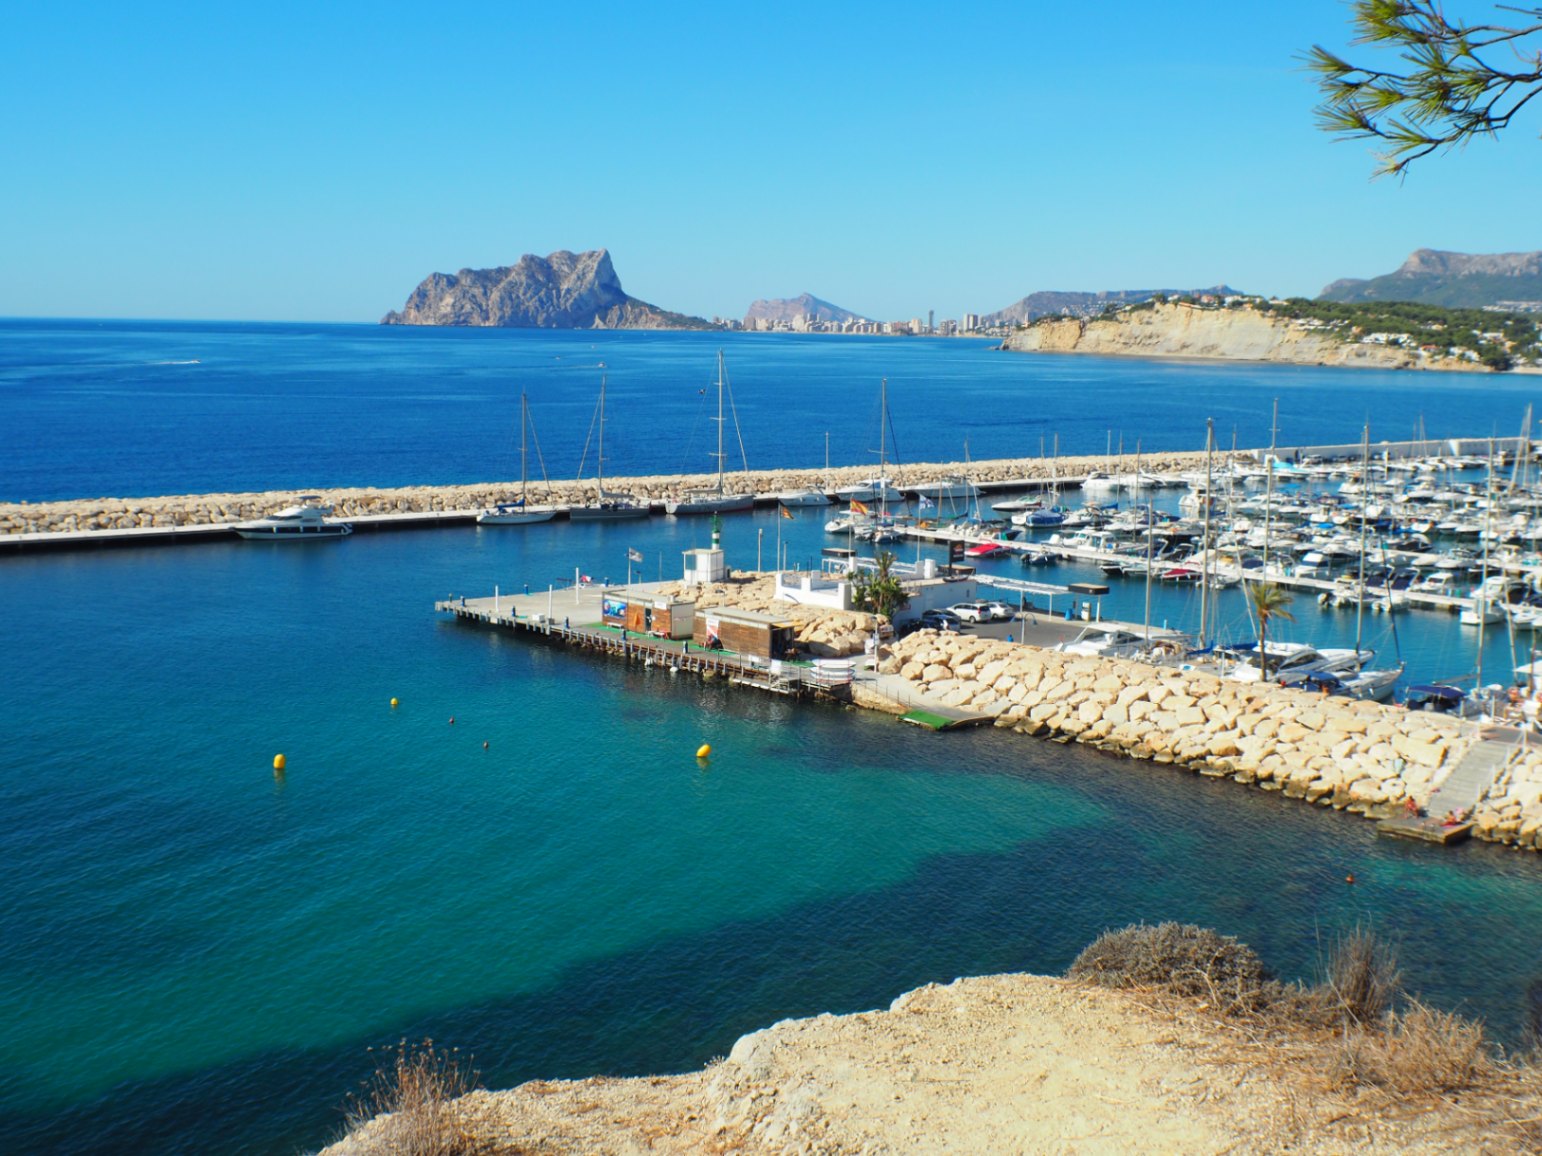 Moderne villa in Ibiza-stijl in Moraira met uitzicht op zee te koop